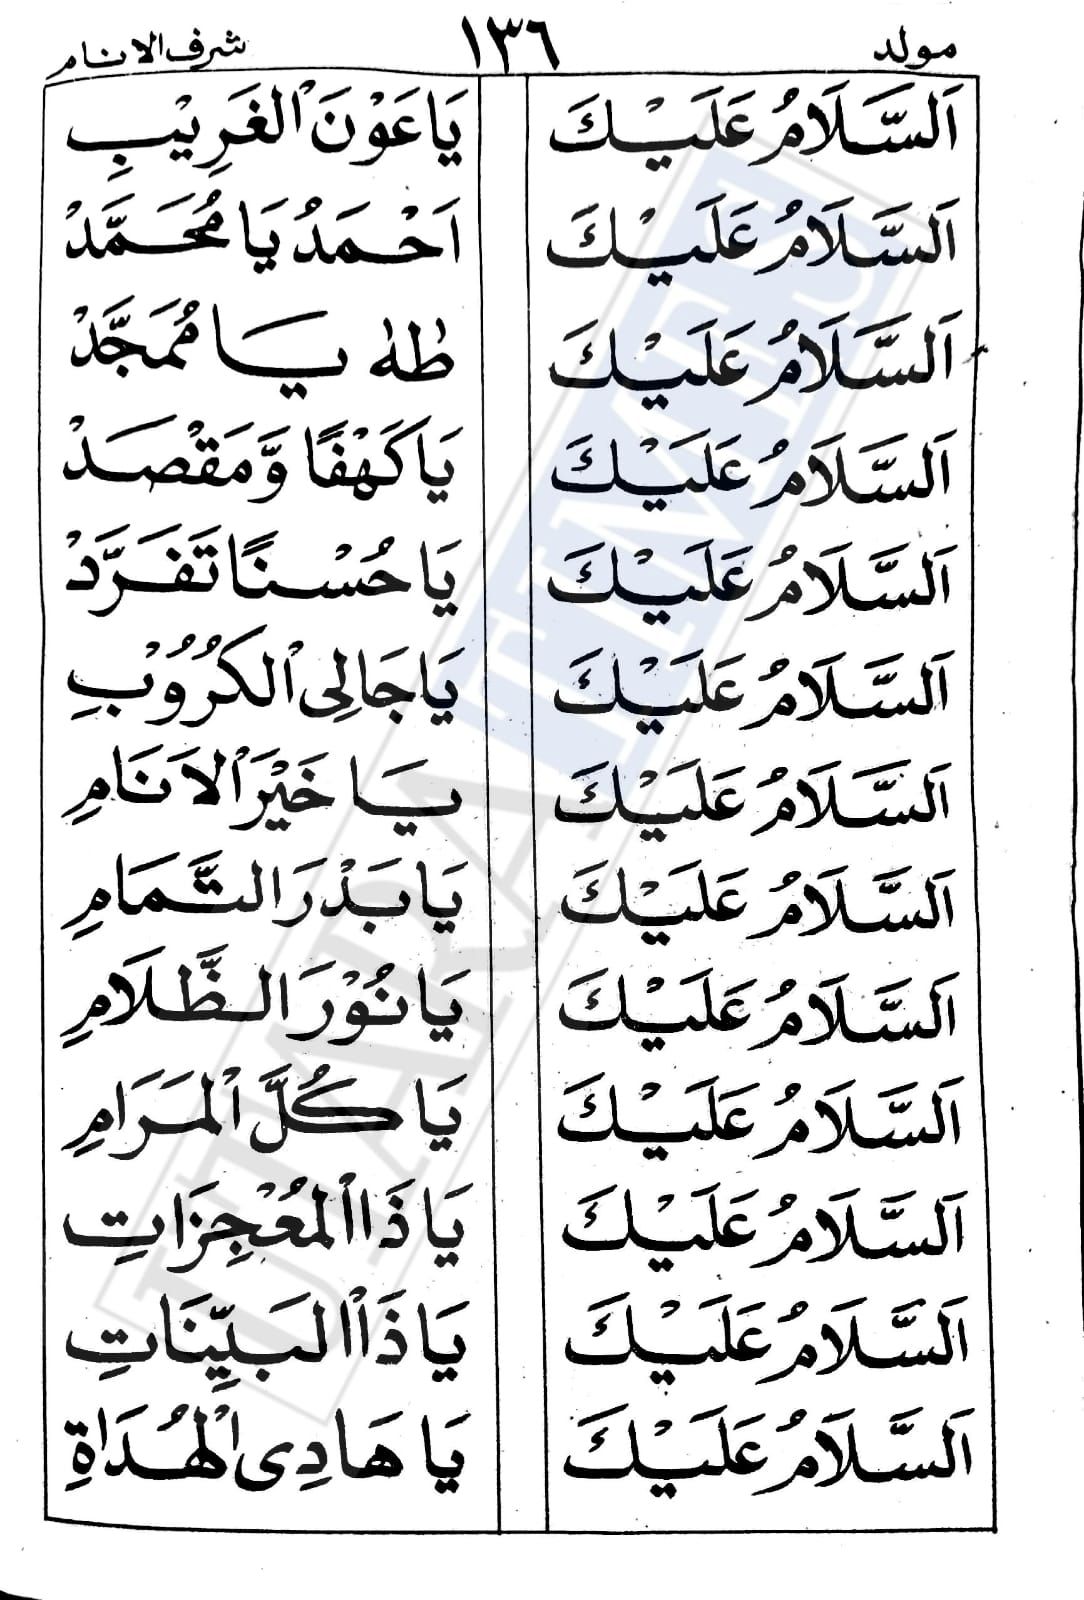 bacaan sholawat Assalamualaik Zainal Anbiya teks Arab lengkap awal hingga akhir